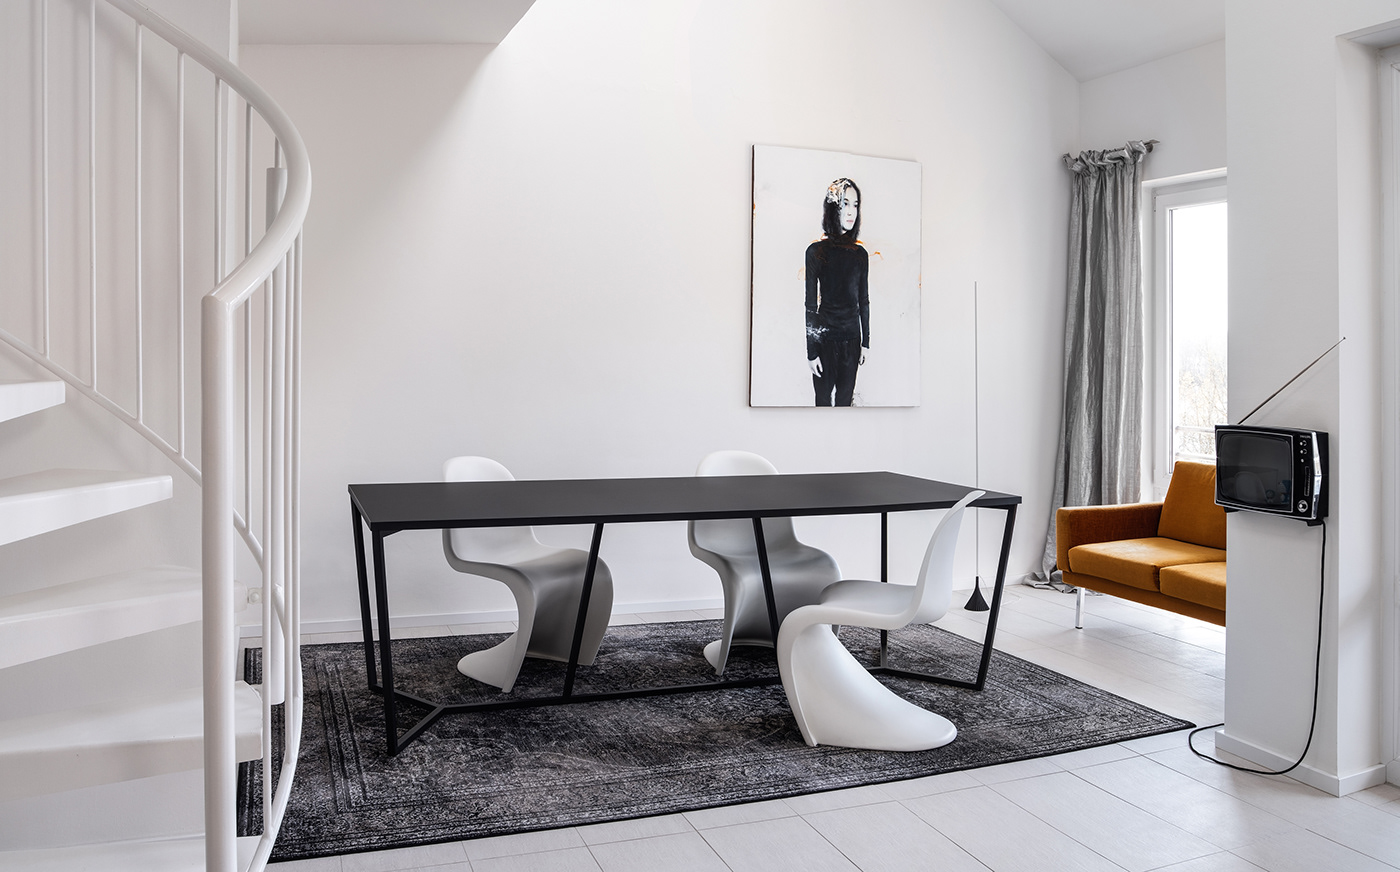 Tisch tabel möbel interior design  modern Minimalism designtabel pantonchair Tischdesign